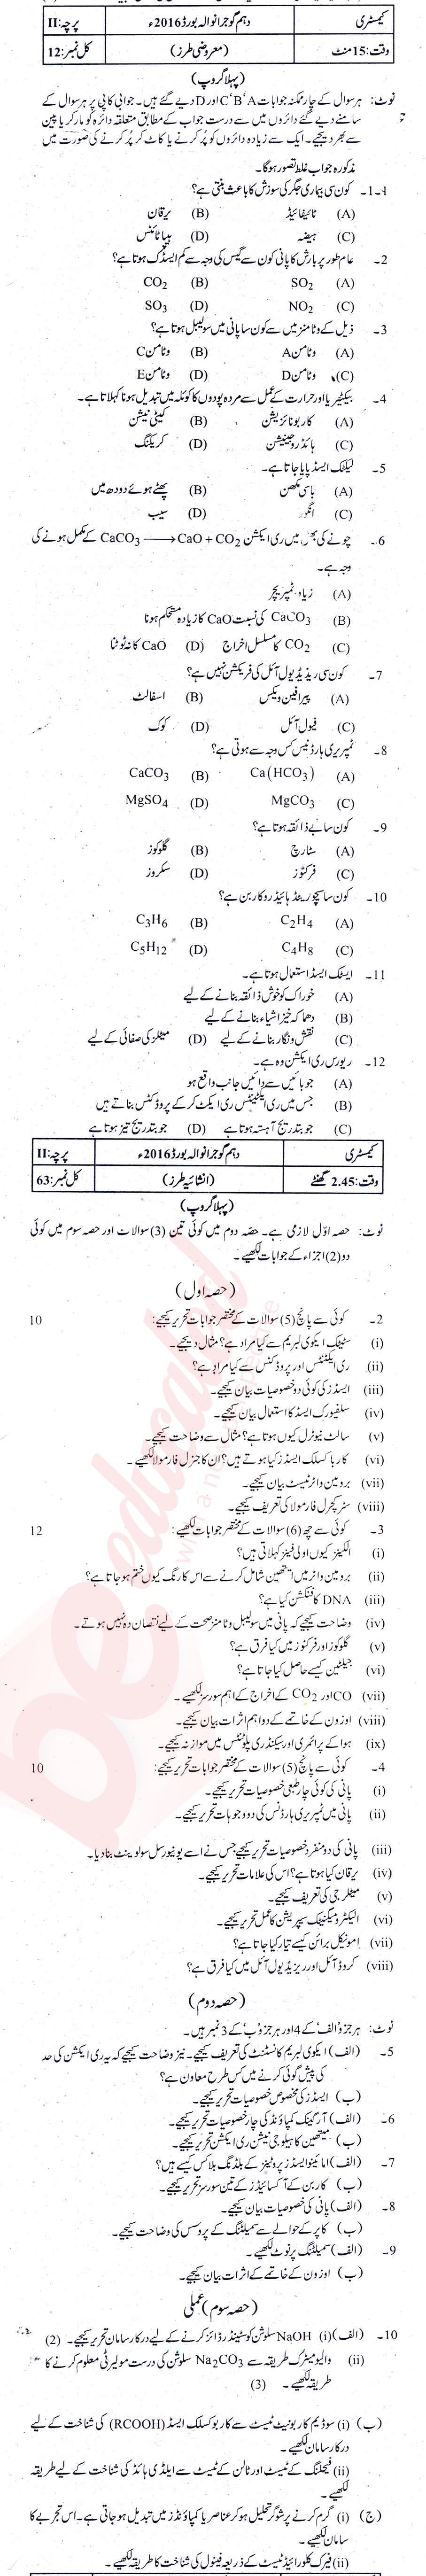 Chemistry 10th Urdu Medium Past Paper Group 1 BISE Gujranwala 2016